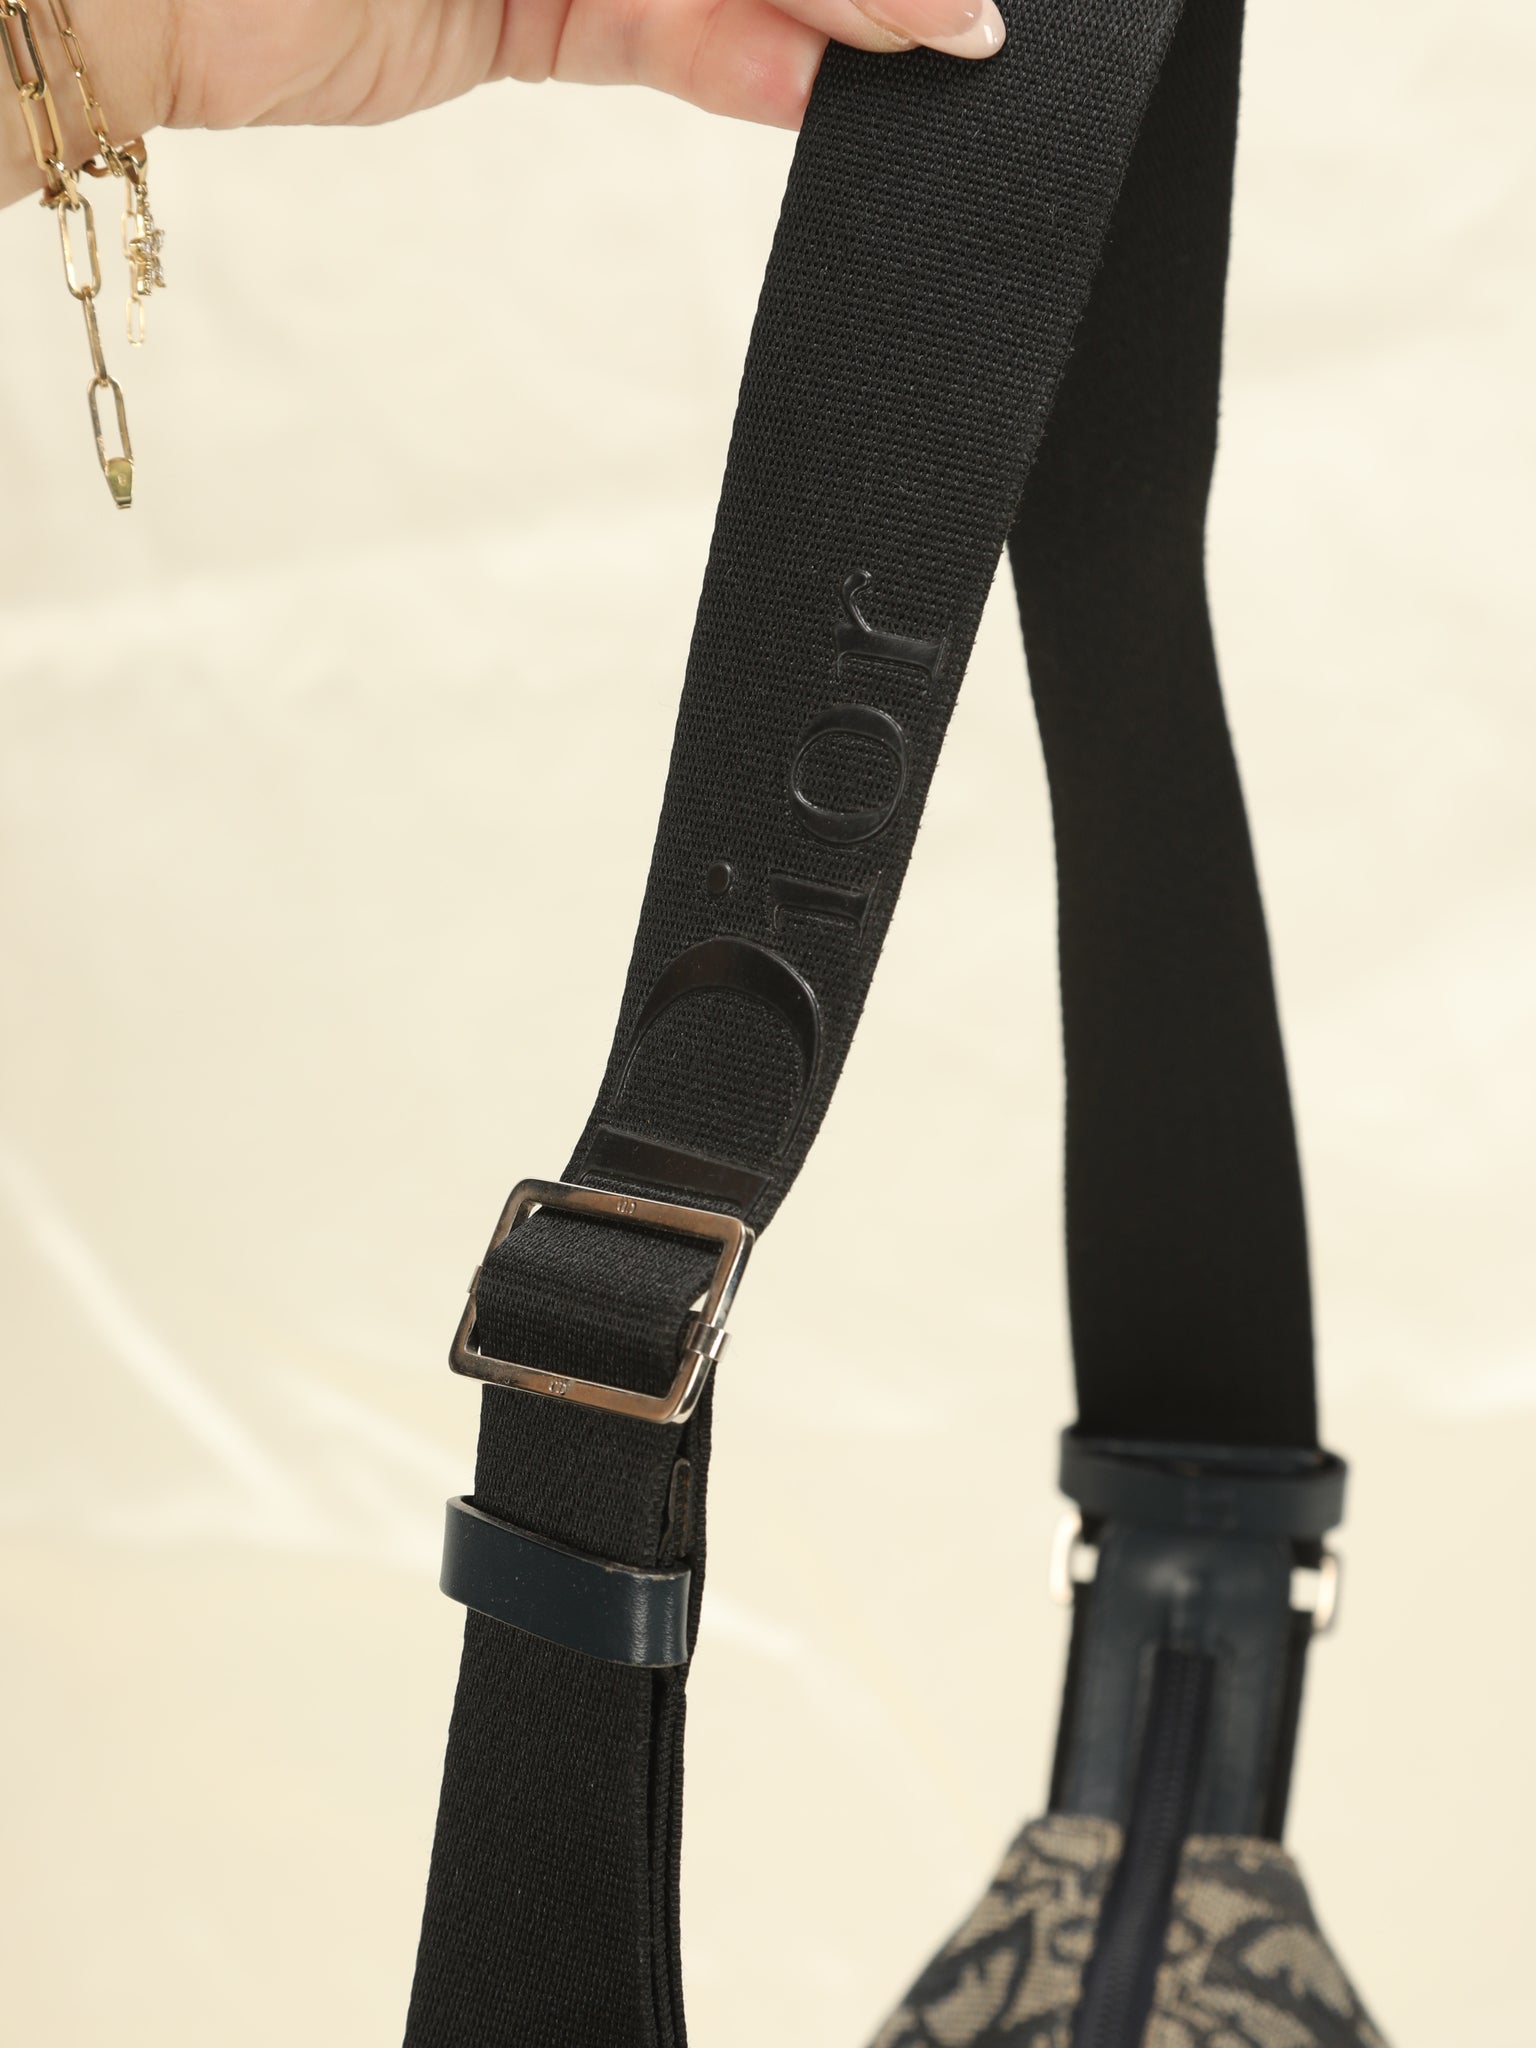 Dior Trotter Shoulder Bag – SFN